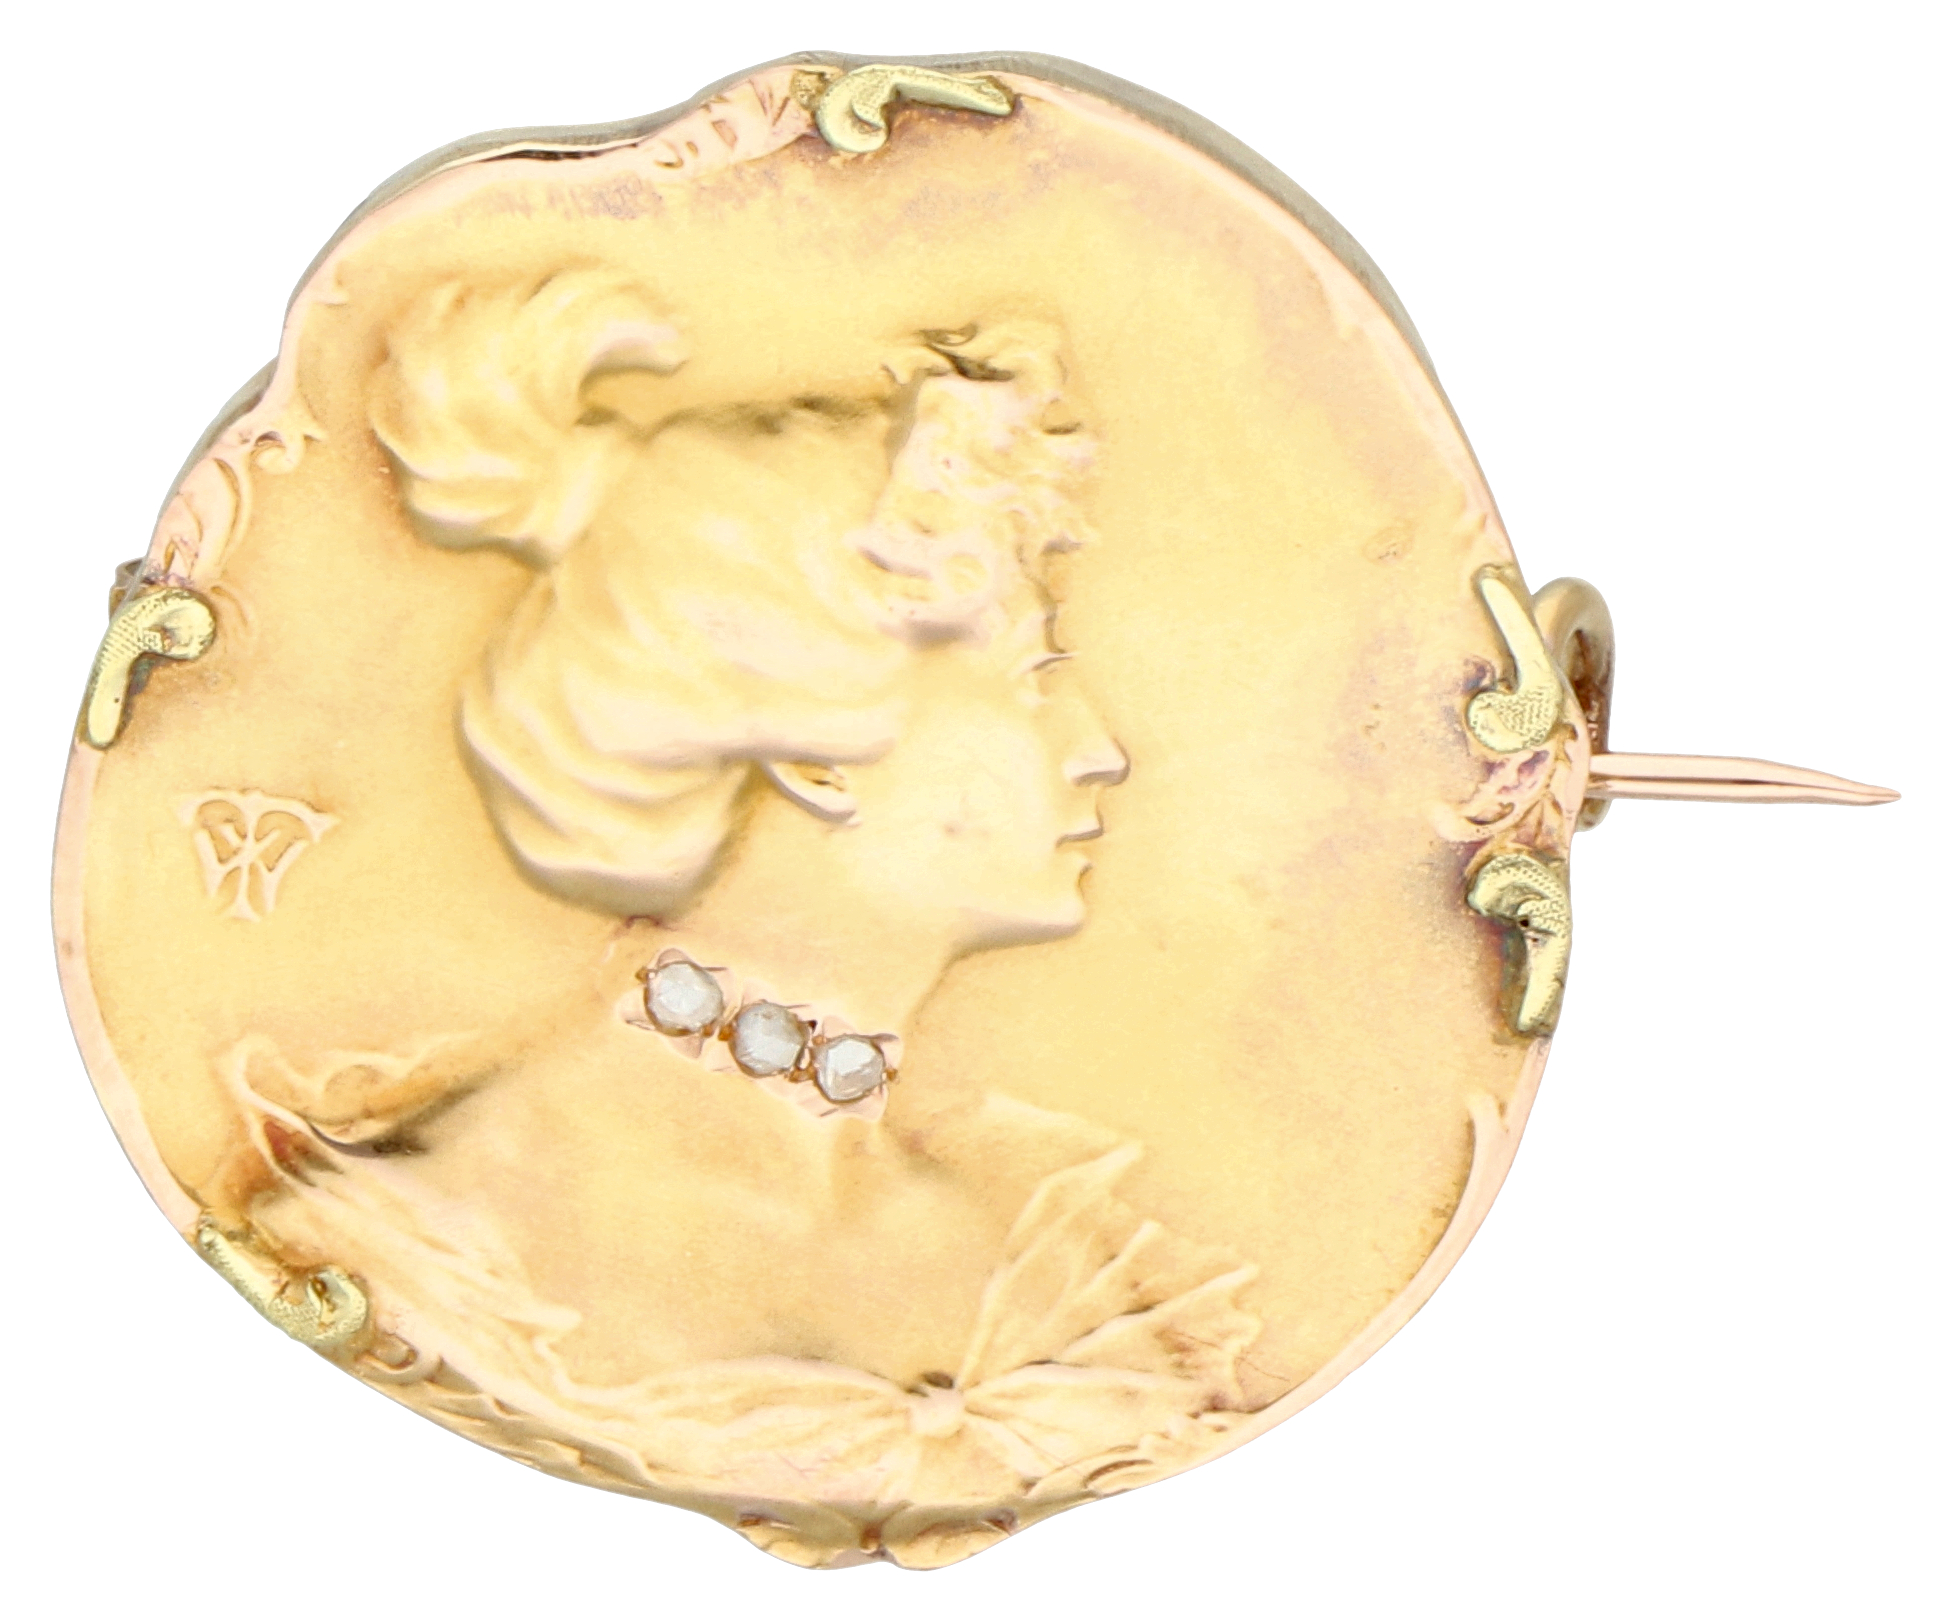 No Reserve - 18K Yellow Gold Art Nouveau brooch 'habilé'.